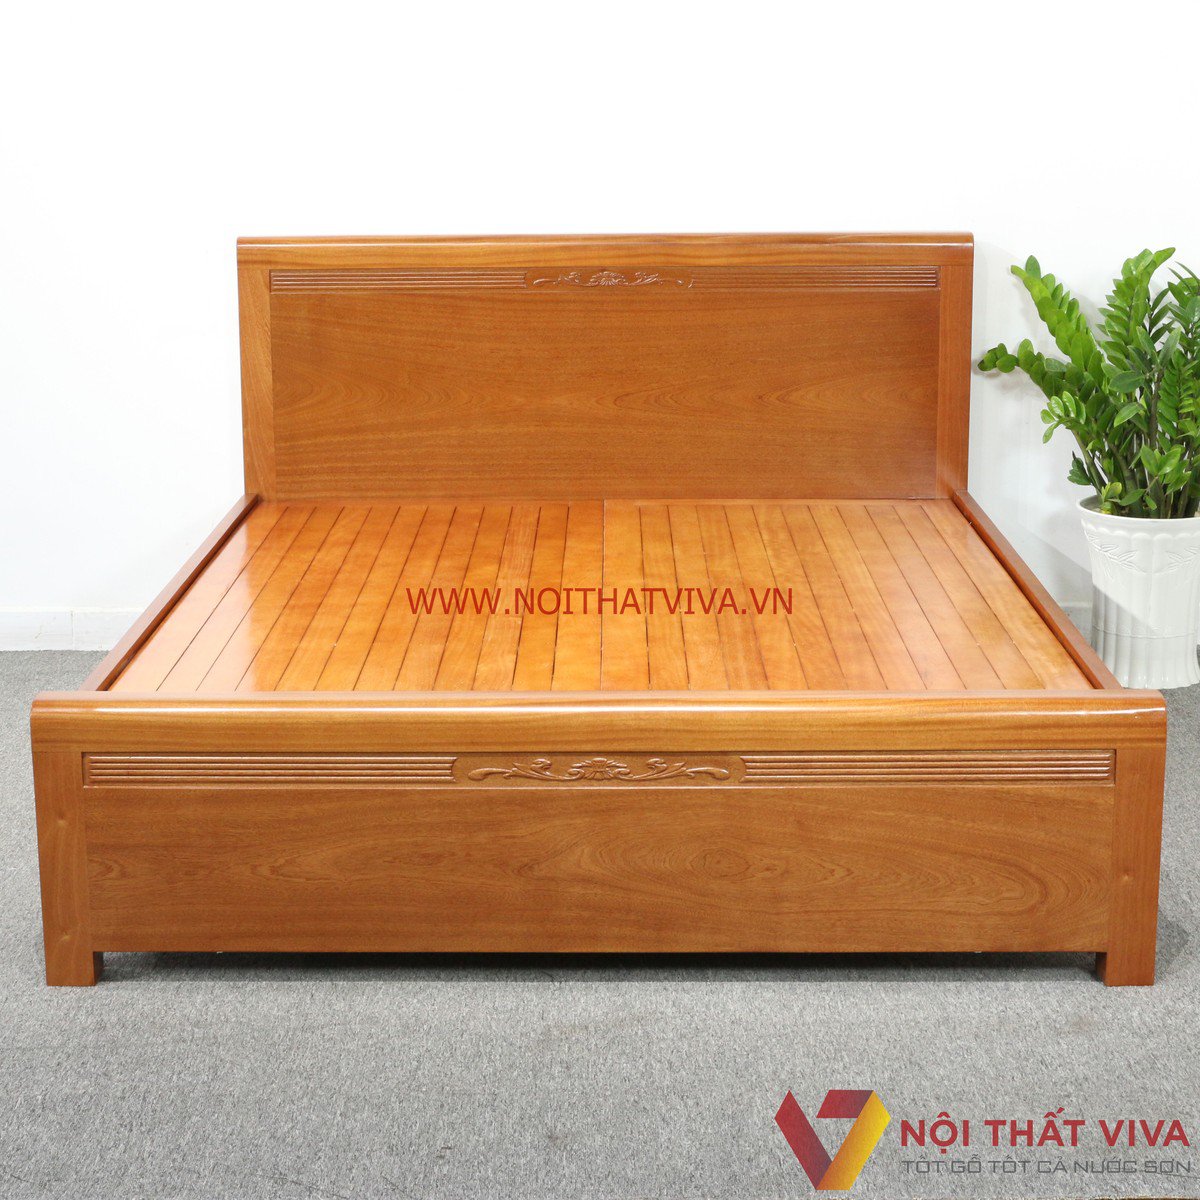 Làm sao để chọn đúng giường ngủ quận Tân Phú giá rẻ mà chất lượng?